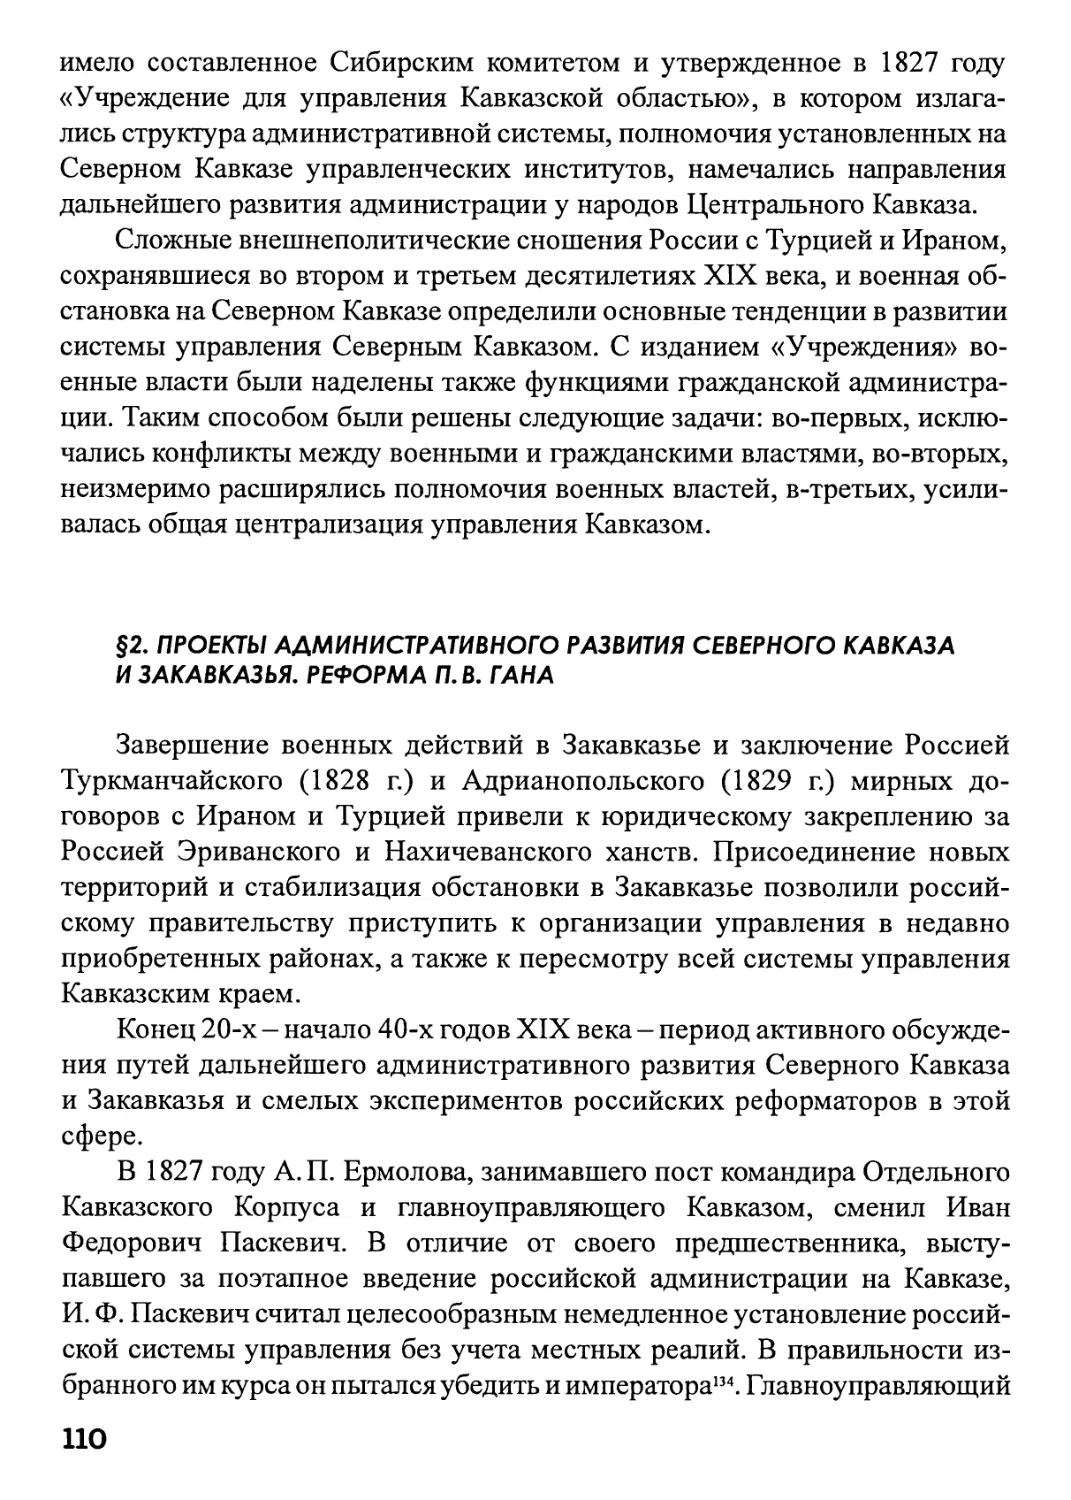 §2. Проекты административного развития северного Кавказа и Закавказья. Реформа П.В. Гана.